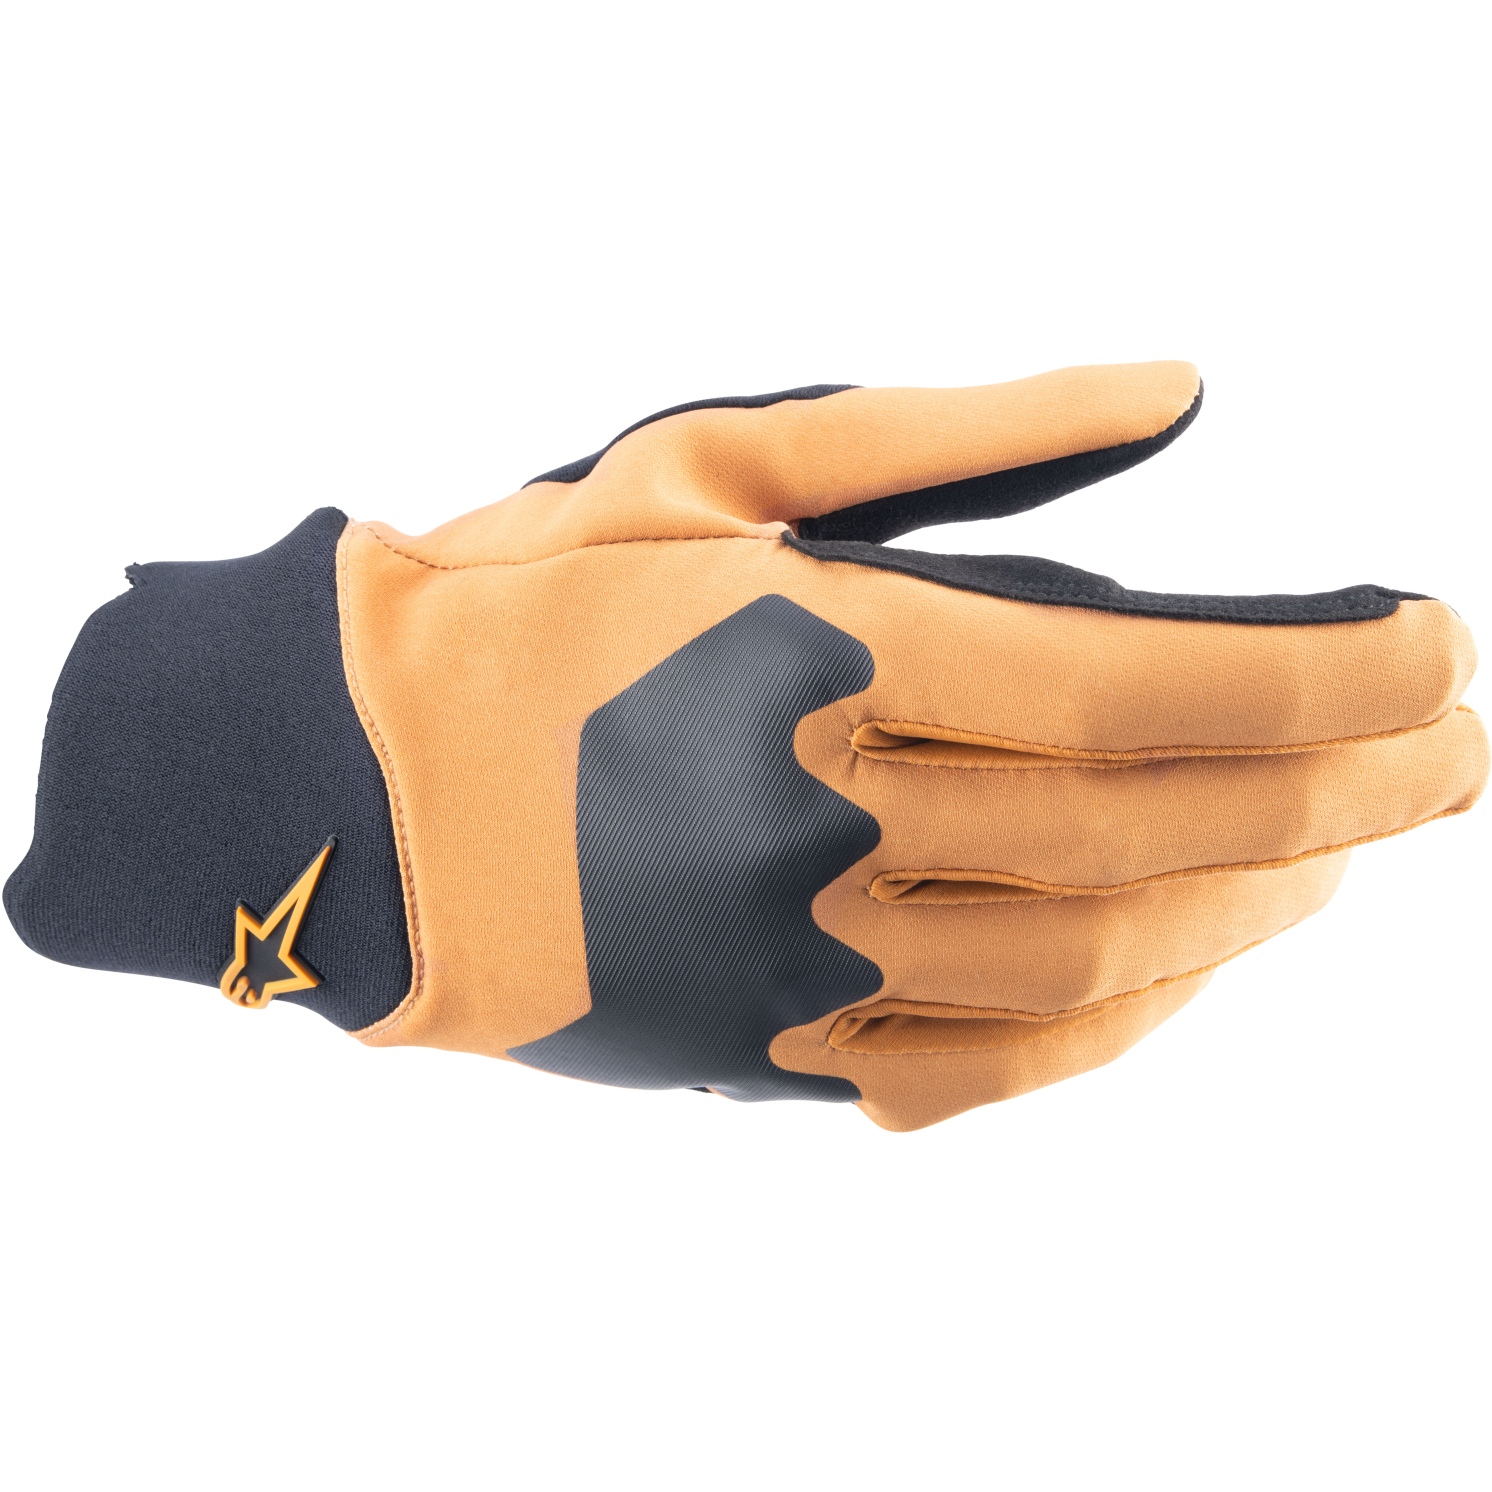 Produktbild von Alpinestars A-Supra Handschuhe - dark gold